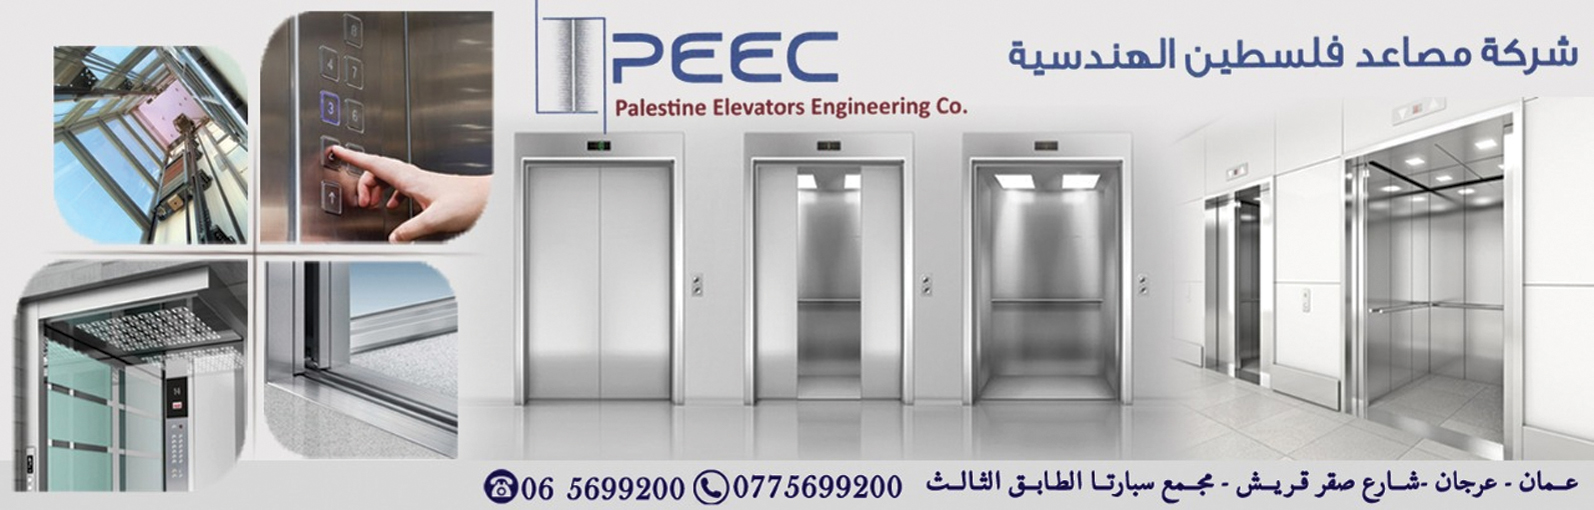 شركة مصاعد فلسطين الهندسية 1